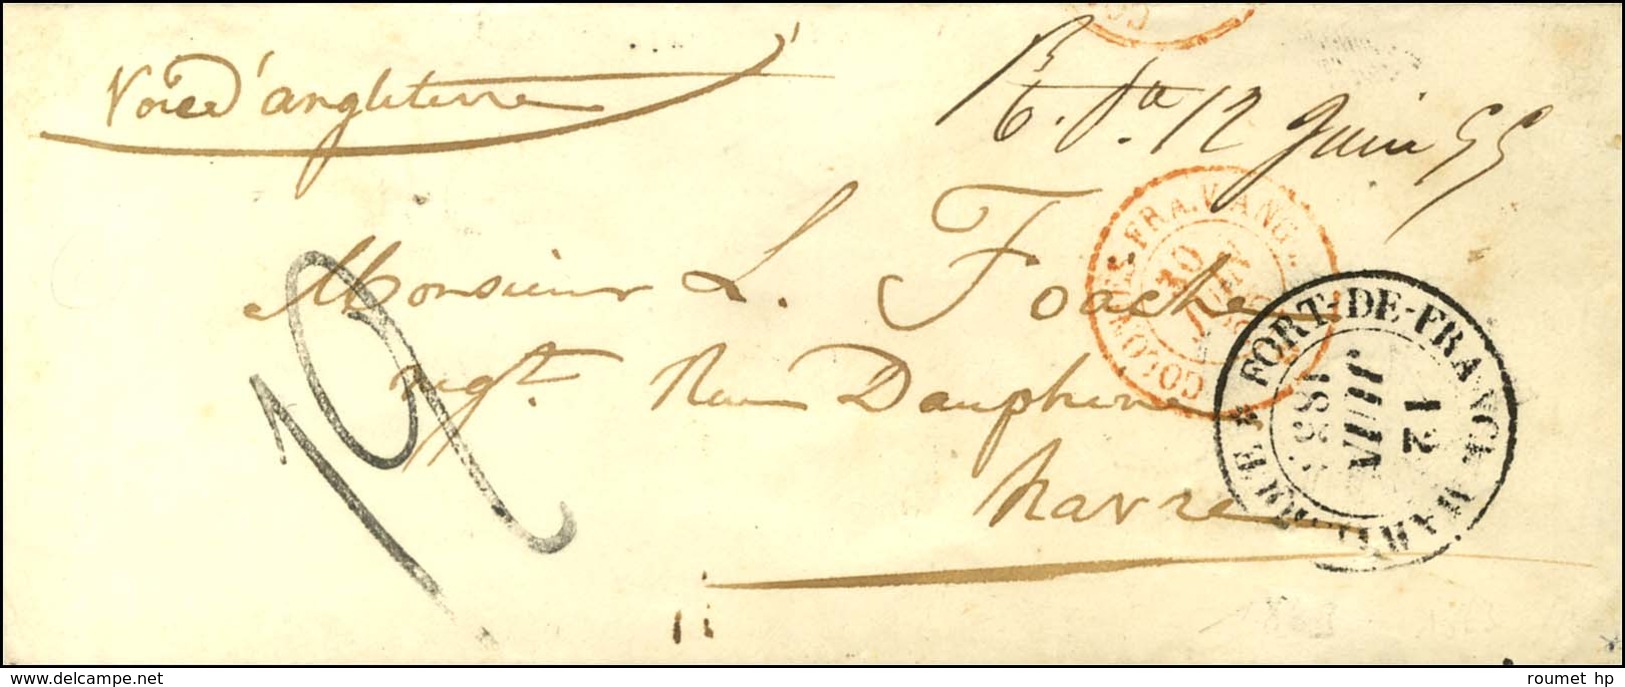 Marque Manuscrite '' R.Pe 12 Juin 55 '' (Rivière Pilote) (J N°1) Sur Enveloppe Pour Le Havre. Au Recto, Càd FORT DE FRAN - Maritieme Post